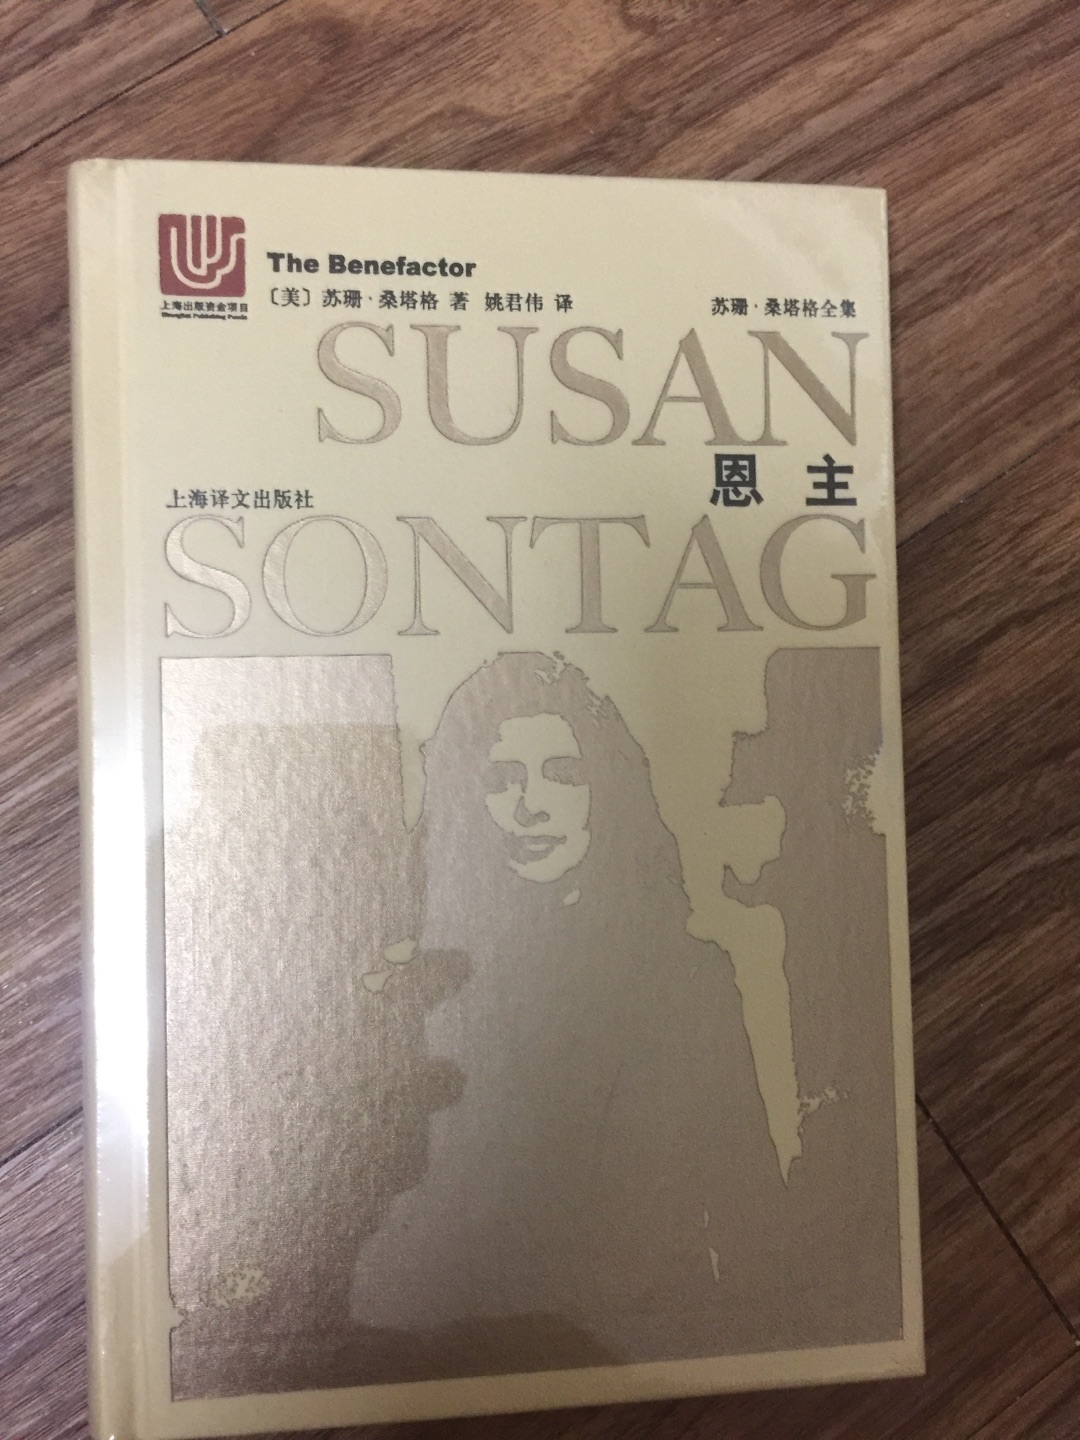 上海译文出版社出版的苏珊·桑塔格全集之《恩主》，苏珊·桑塔格的书很适合女性读者，这次买了一套给我媳妇。32开的硬壳精装，阅读和收藏皆可。